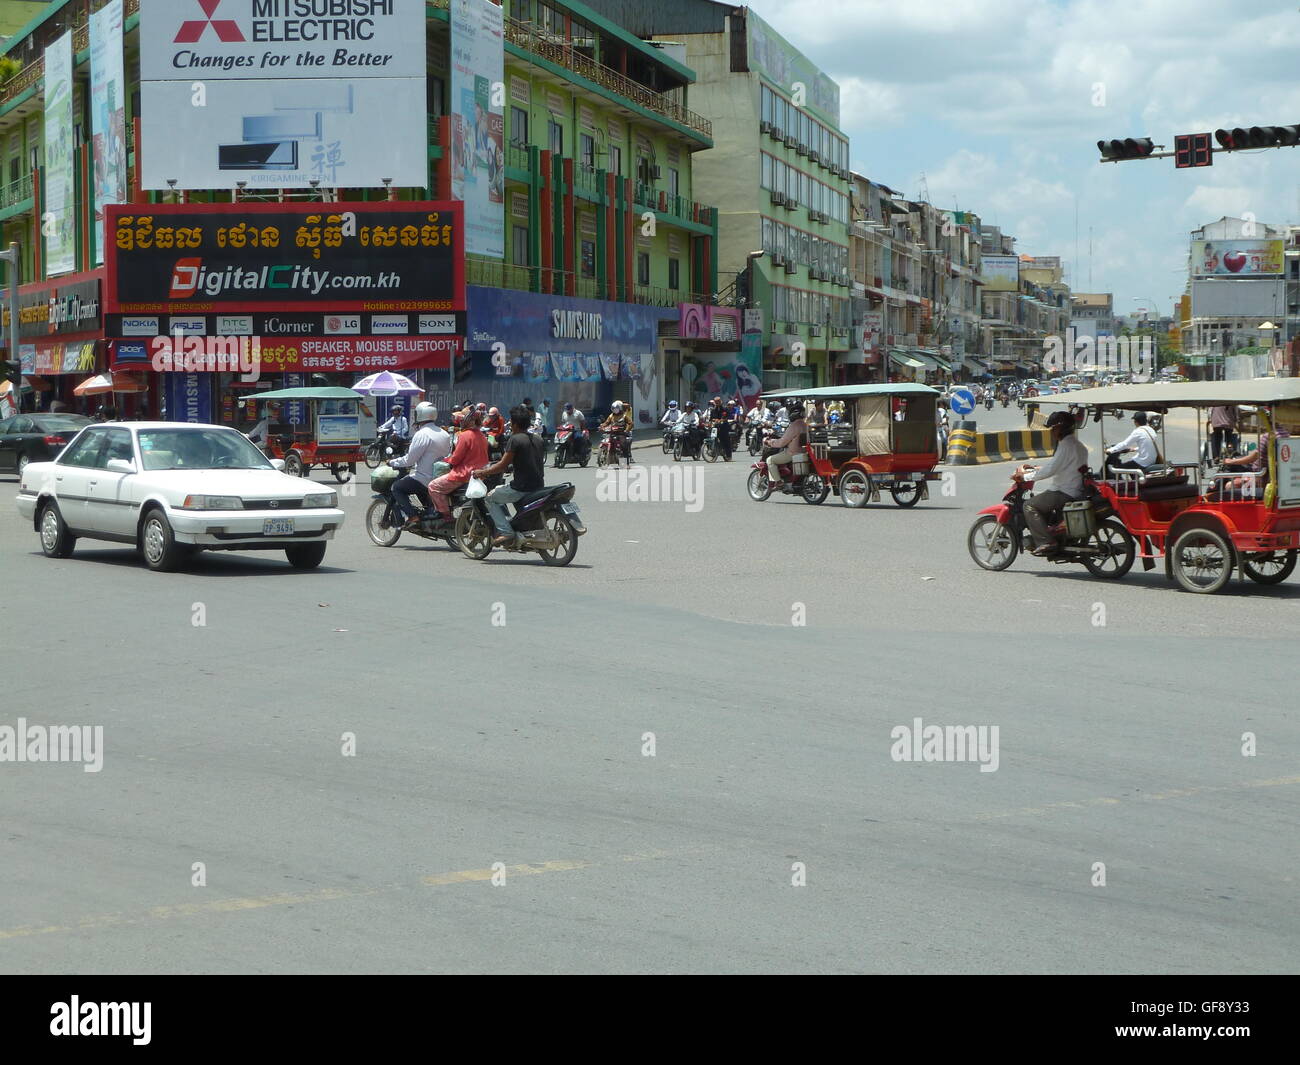 Street photo à Phnom Penh avec les gens qui voyagent dans les voitures et sur les motos. Très occupé et dynamique ville cambodgienne. Banque D'Images